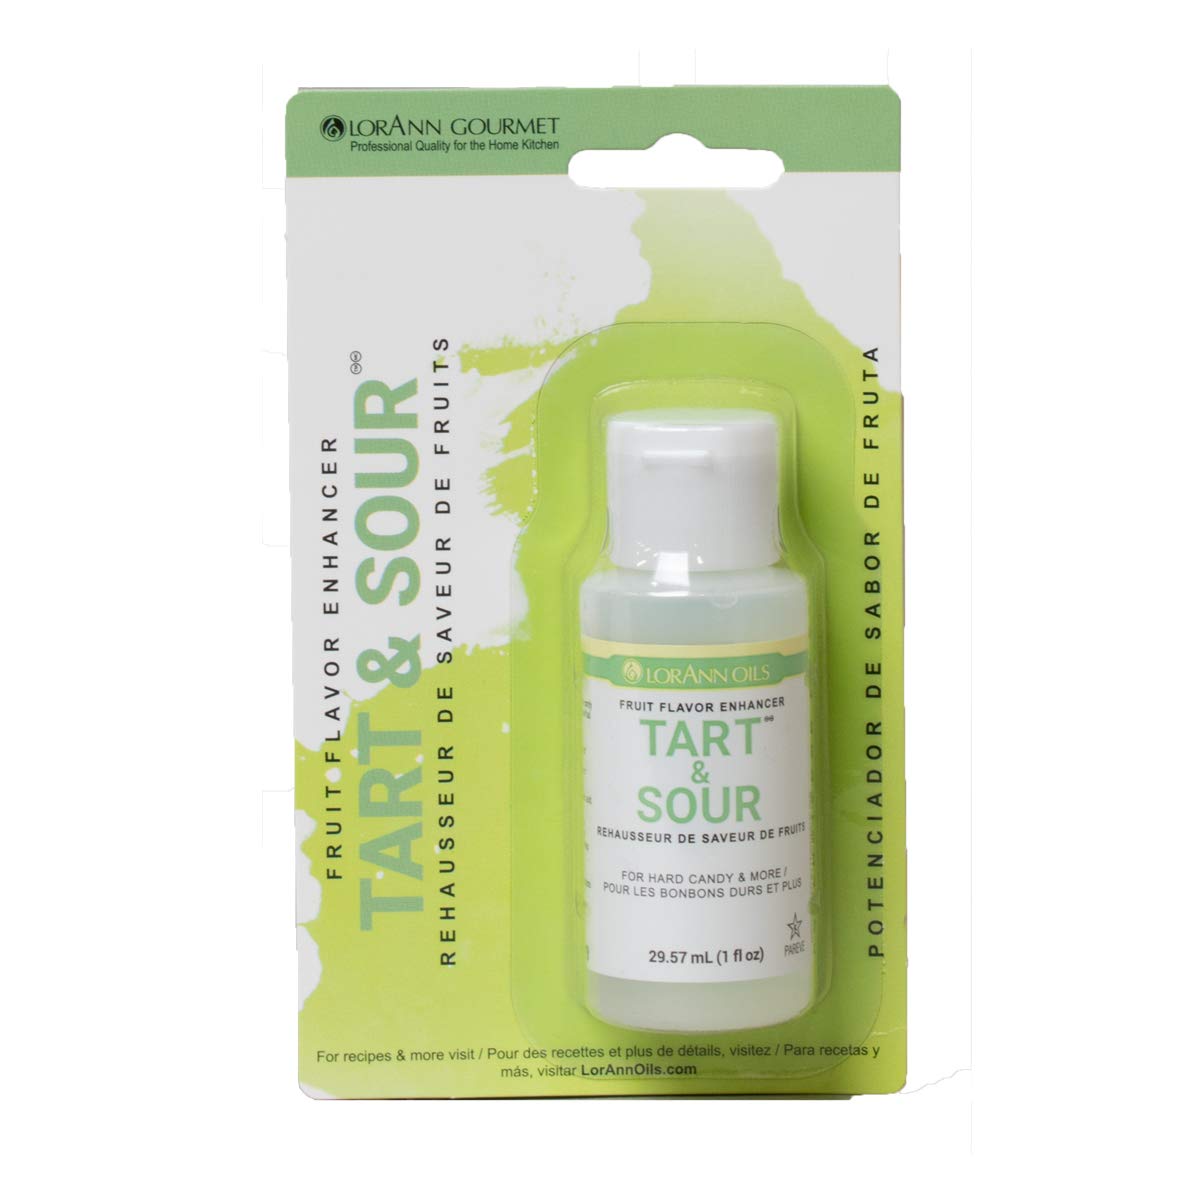 LorAnn Tart and Sour Flavor Enhancer - 1 ounce bottle - Blister Pack